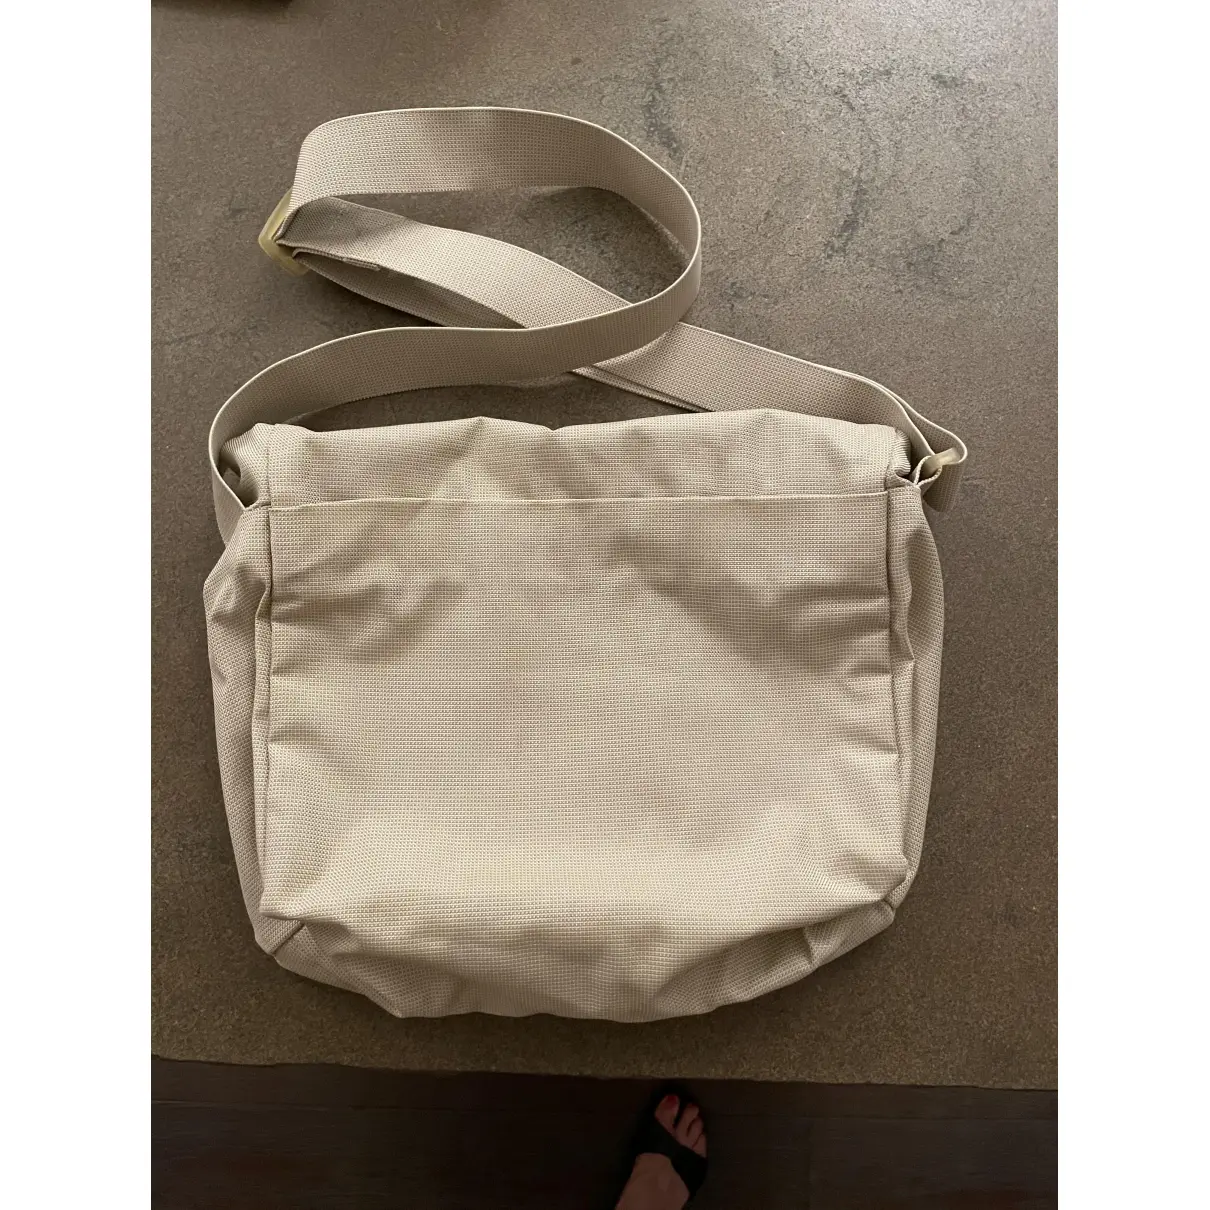 Buy MANDARINA DUCK Cloth handbag online